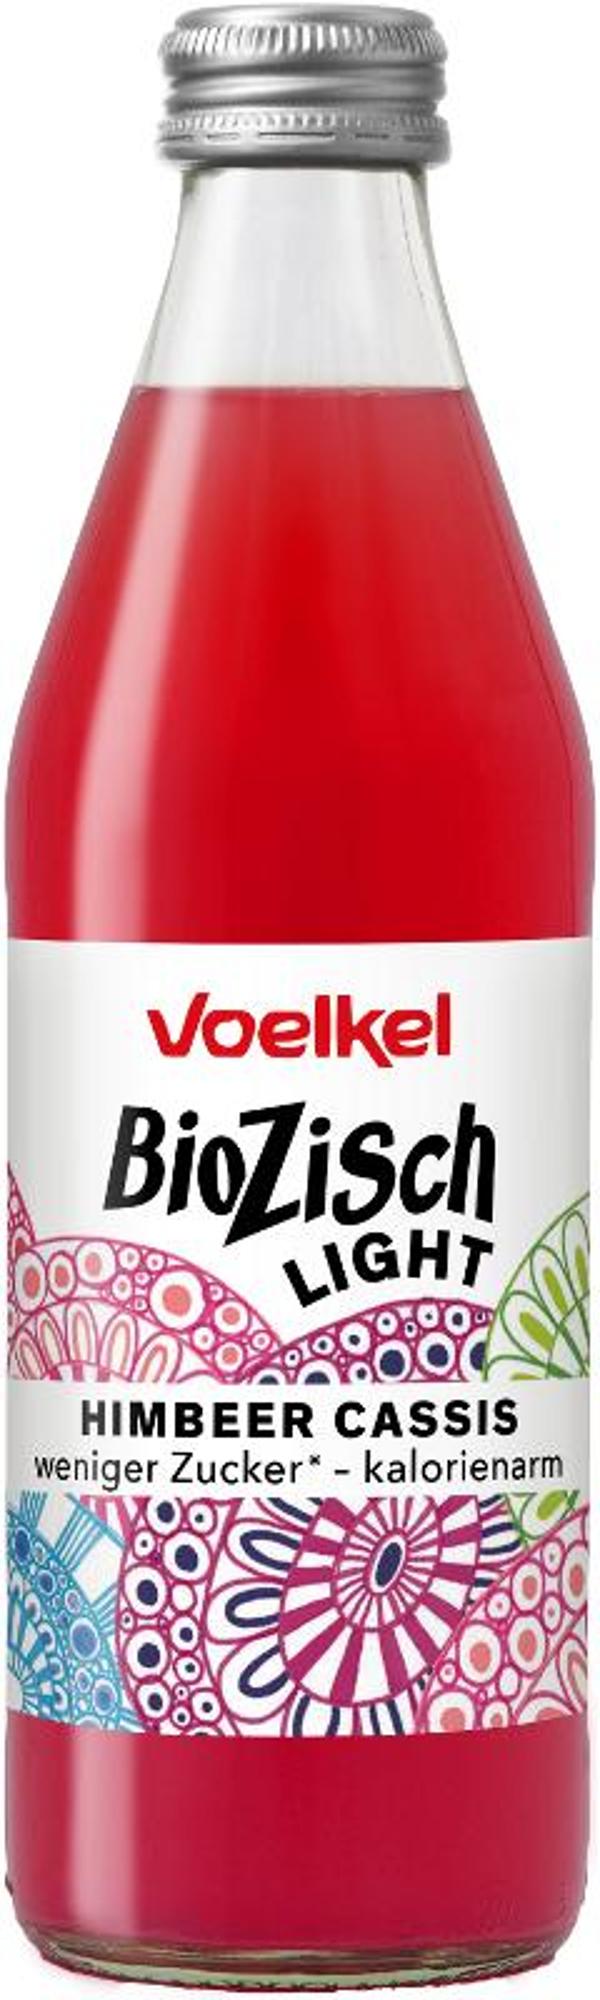 Produktfoto zu BioZisch light Himbeere Cassis 0,33l Voelkel